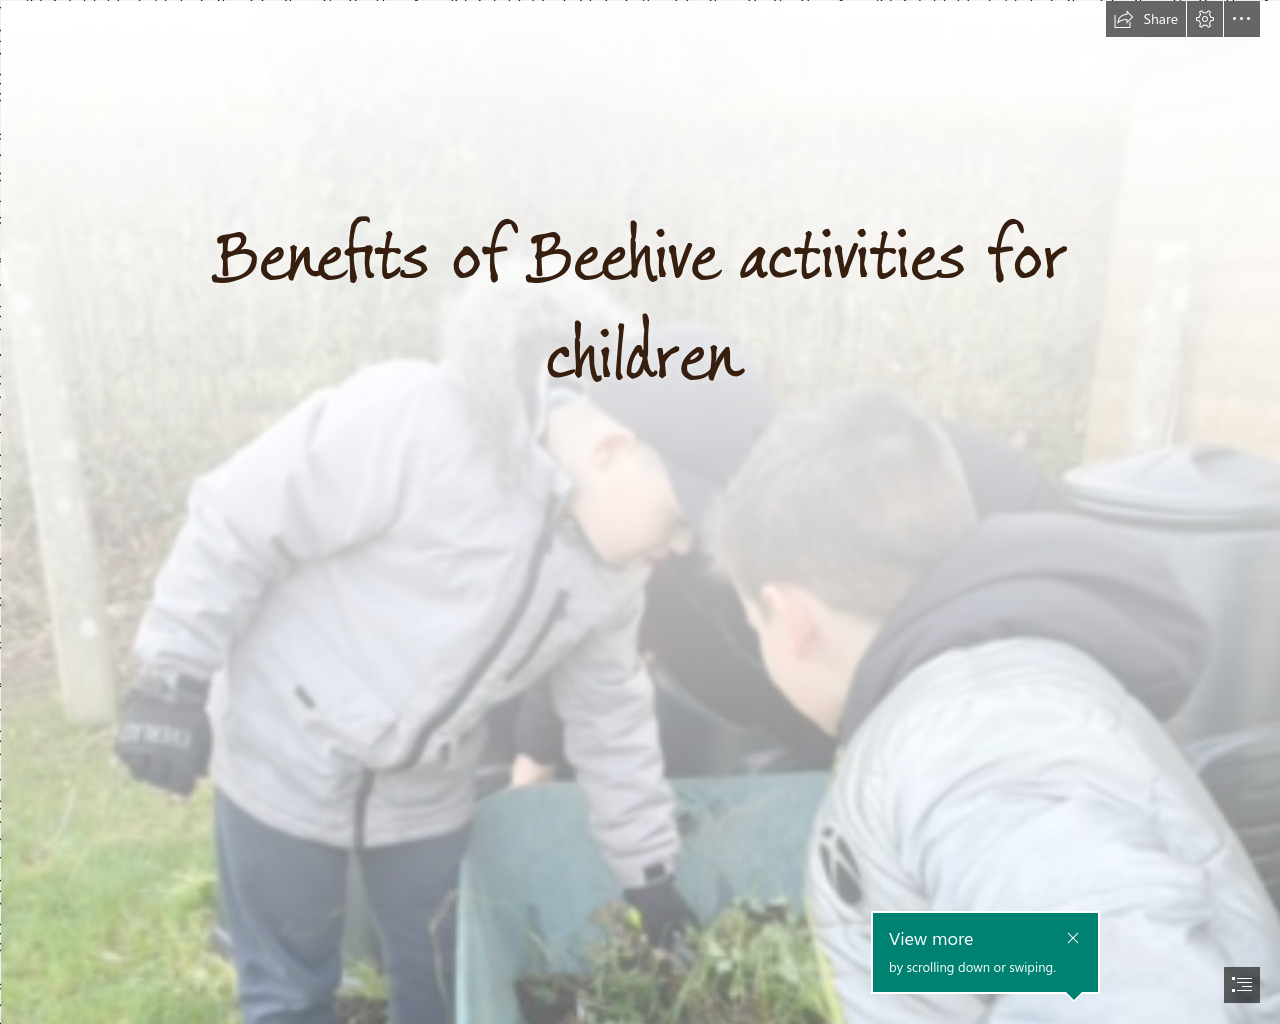 Benefits of Beehive activities for children